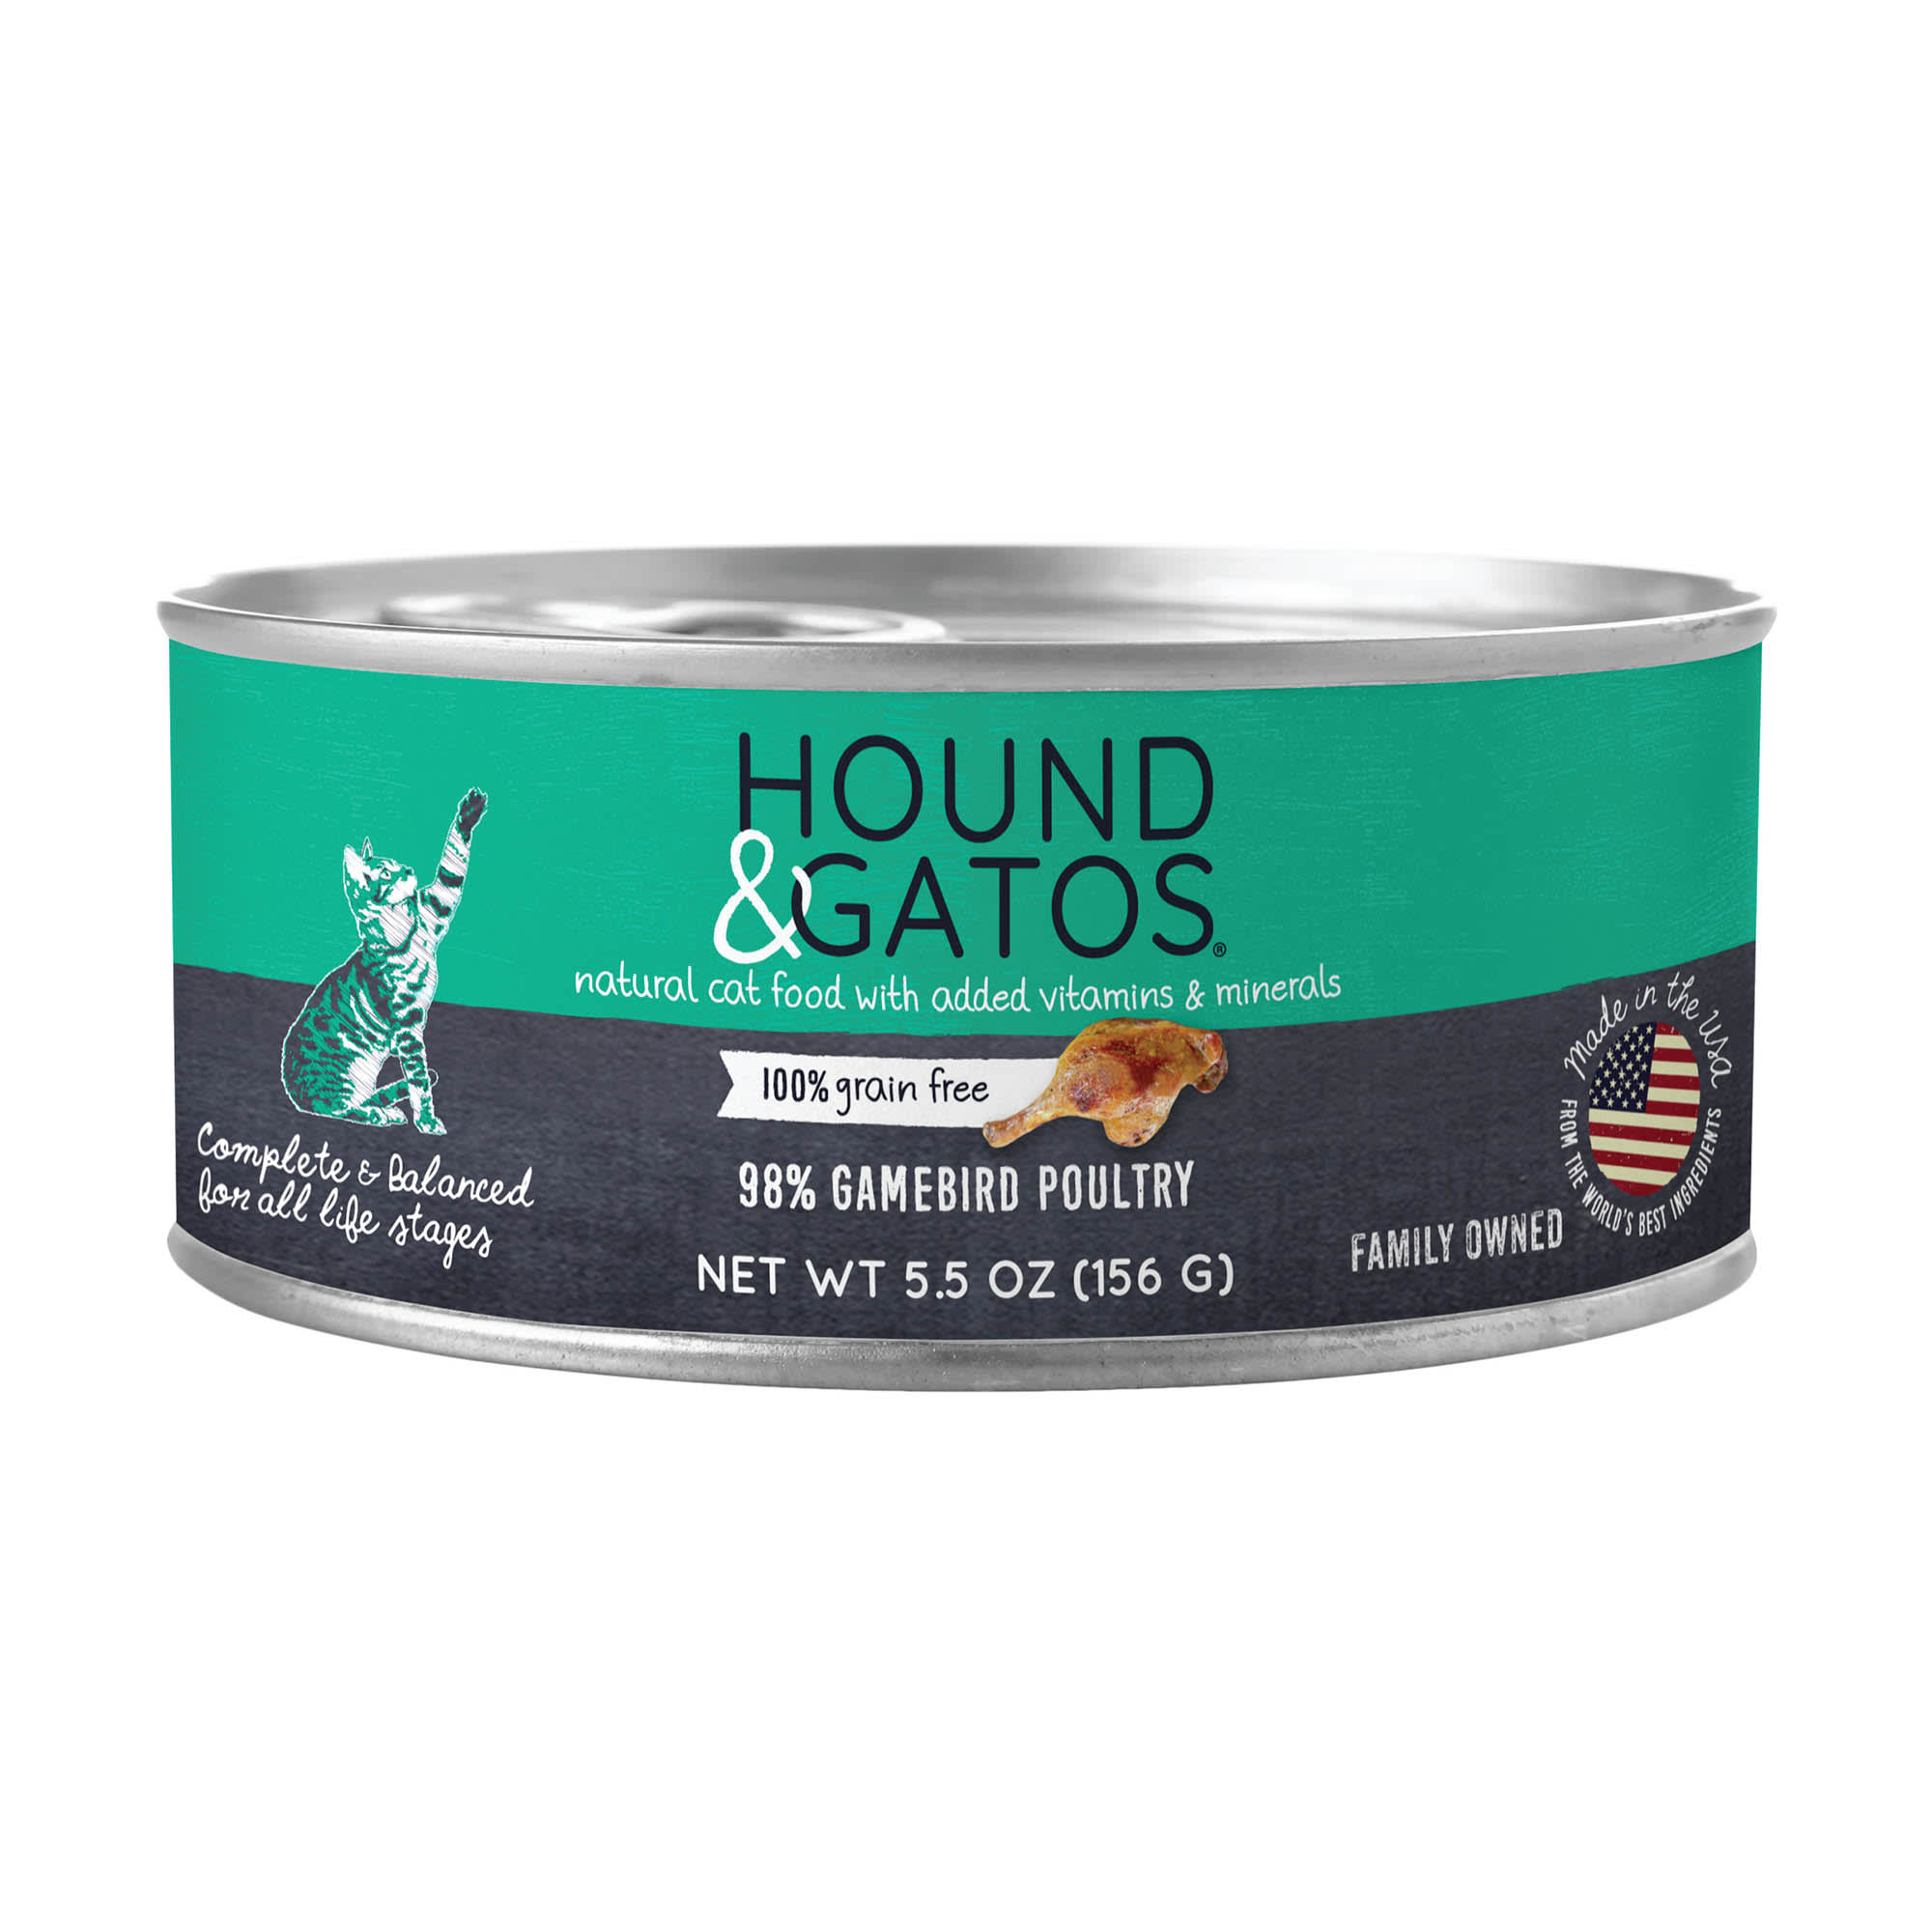 Hound & Gatos Grain Free, Gamebird Poultry Wet Cat Food, 5.5 oz., Case of 24, 24 X 5.5 OZ